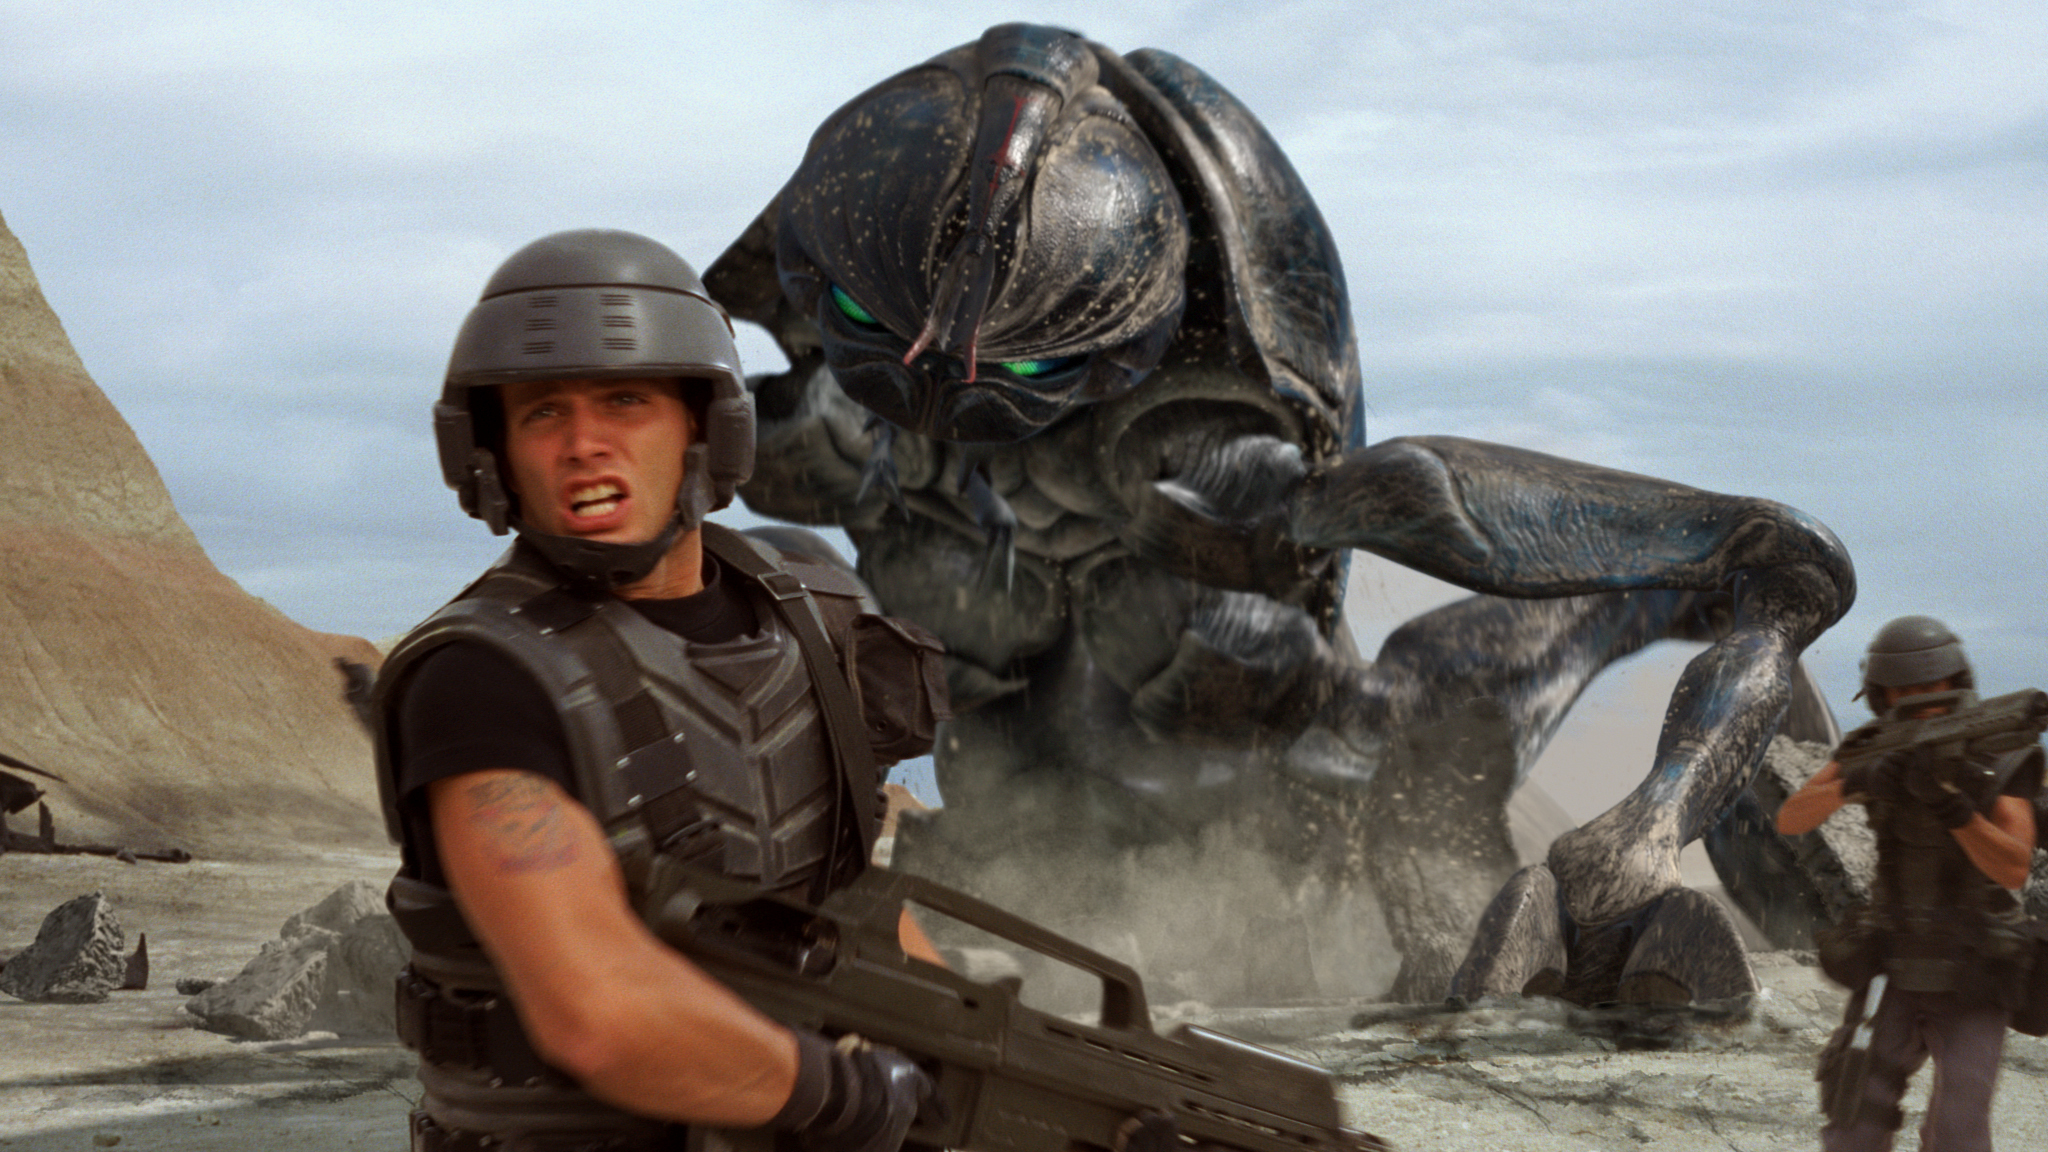 تعدادی از فیلم های علمی تخیلی جنگی از حضور شخصیت های منفی مانند موجودات فضایی، ربات ها، برنامه های کامپیوتری، حشرات و امپراطوری های کهکشانی